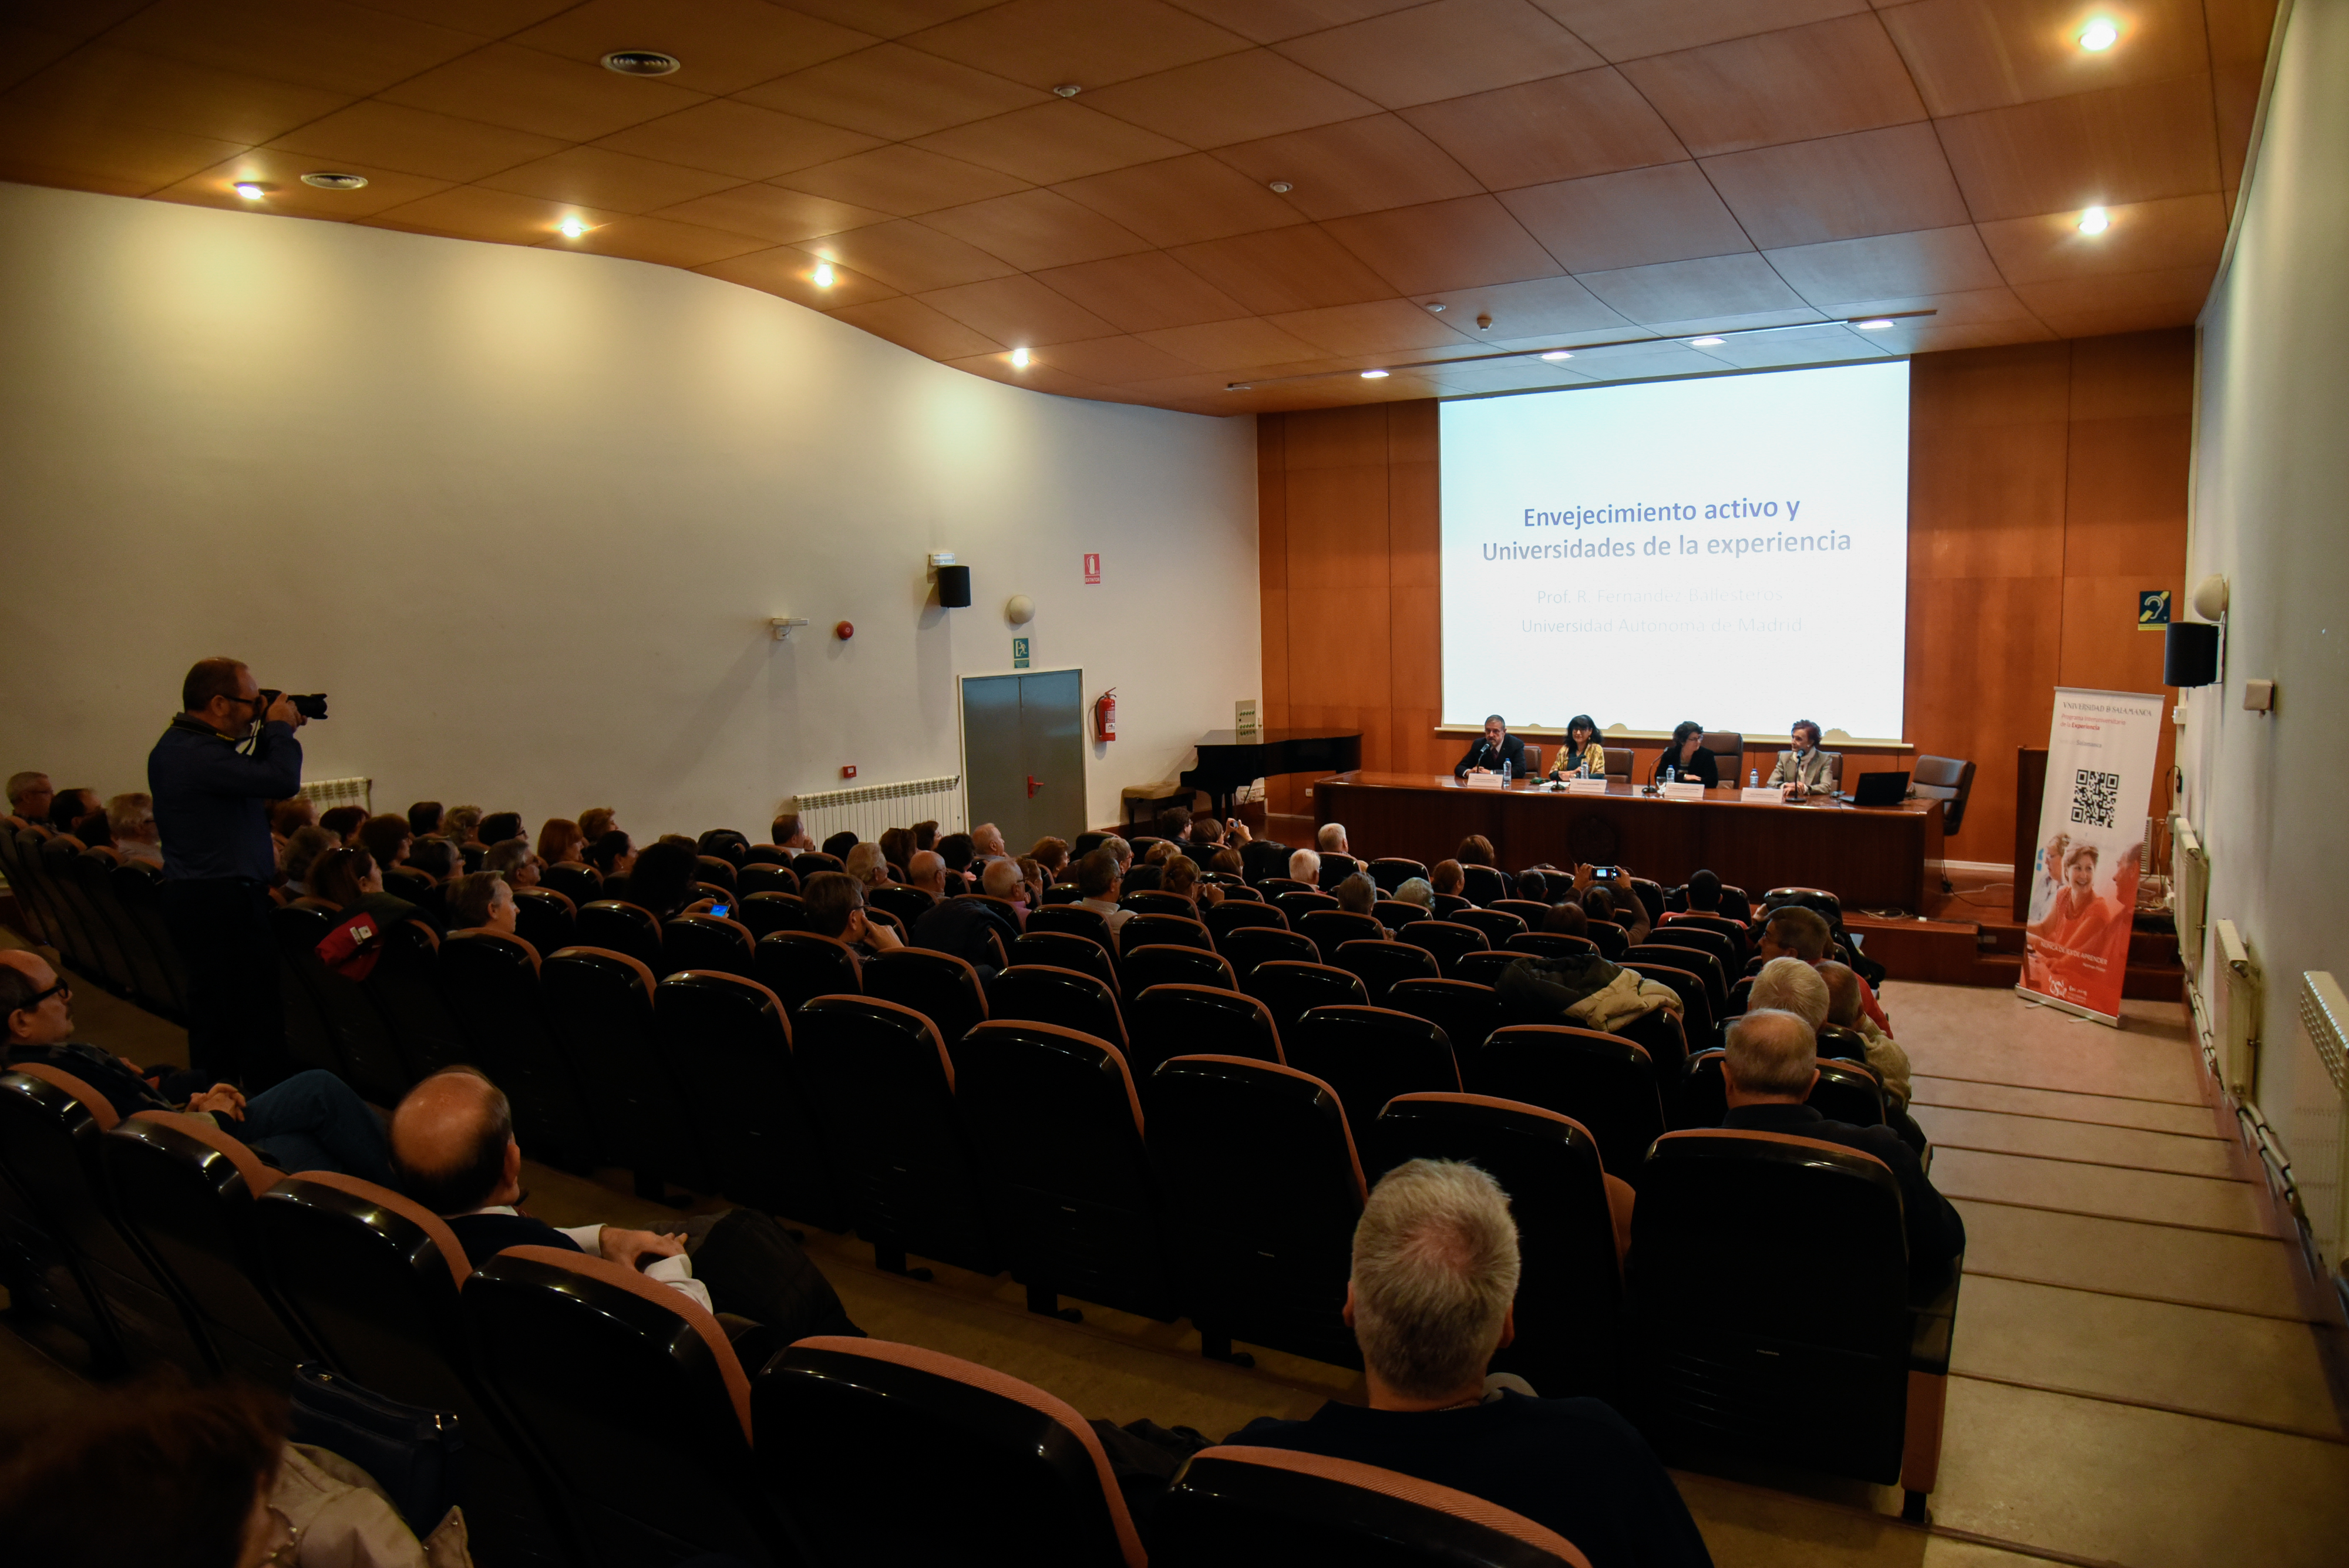 Rocío Fernández Ballesteros, futura doctora Honoris Causa por la Universidad de Salamanca, impartirá la conferencia ‘El envejecimiento activo y las universidades de la experiencia’